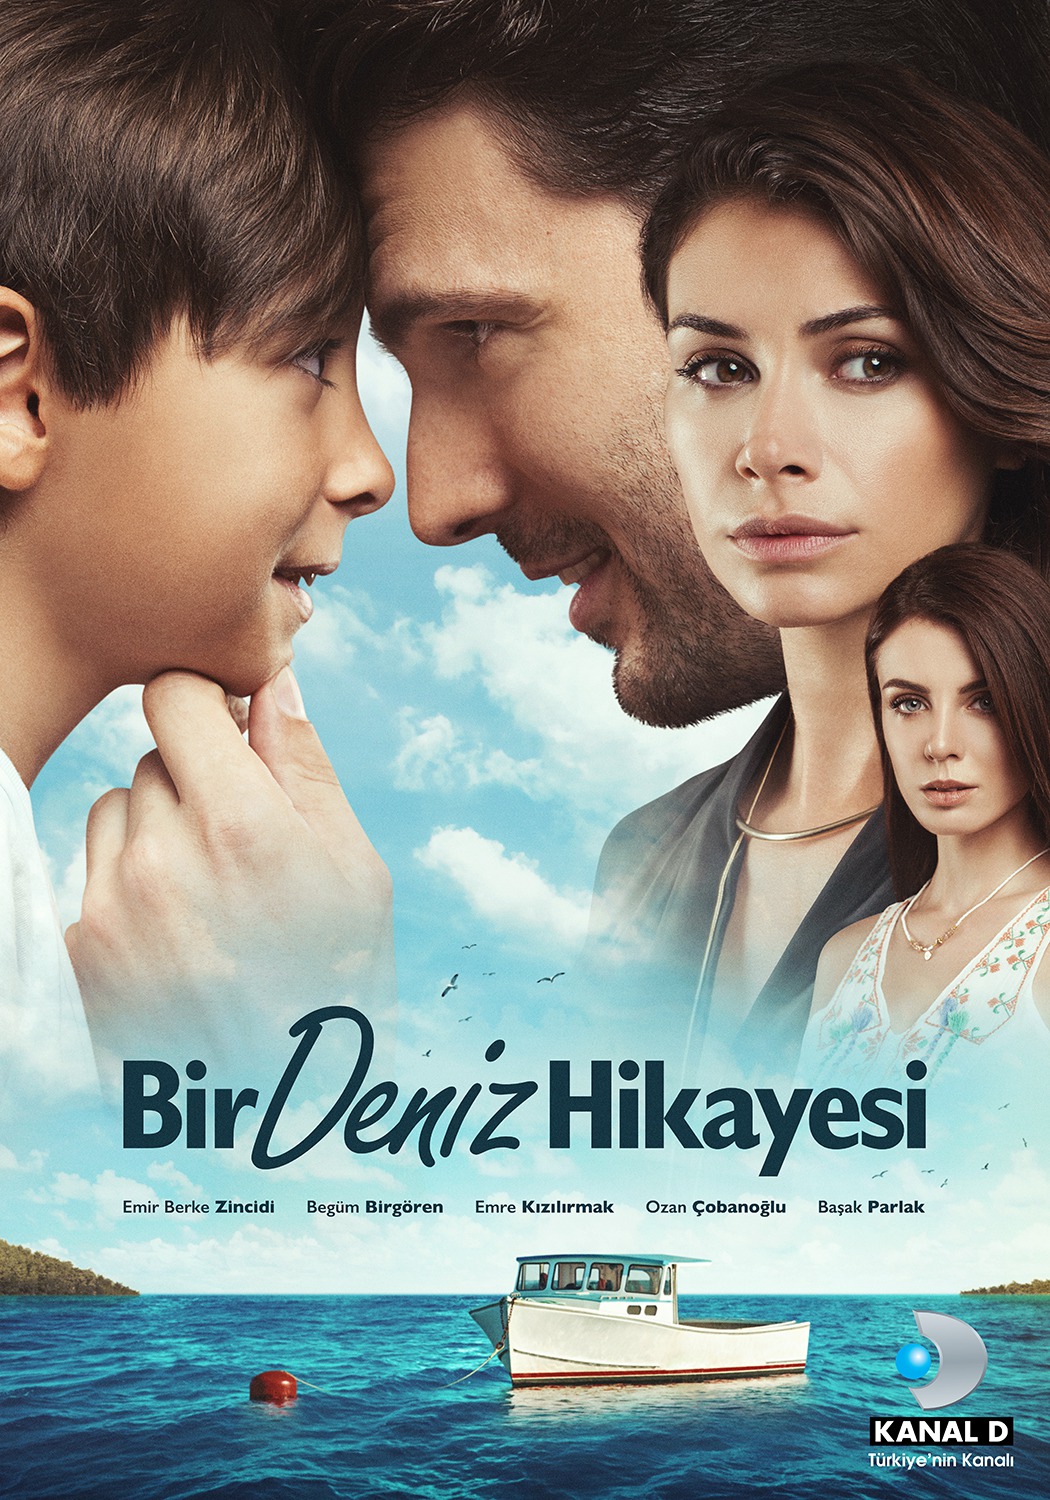 Extra Large TV Poster Image for Bir Deniz Hikayesi 